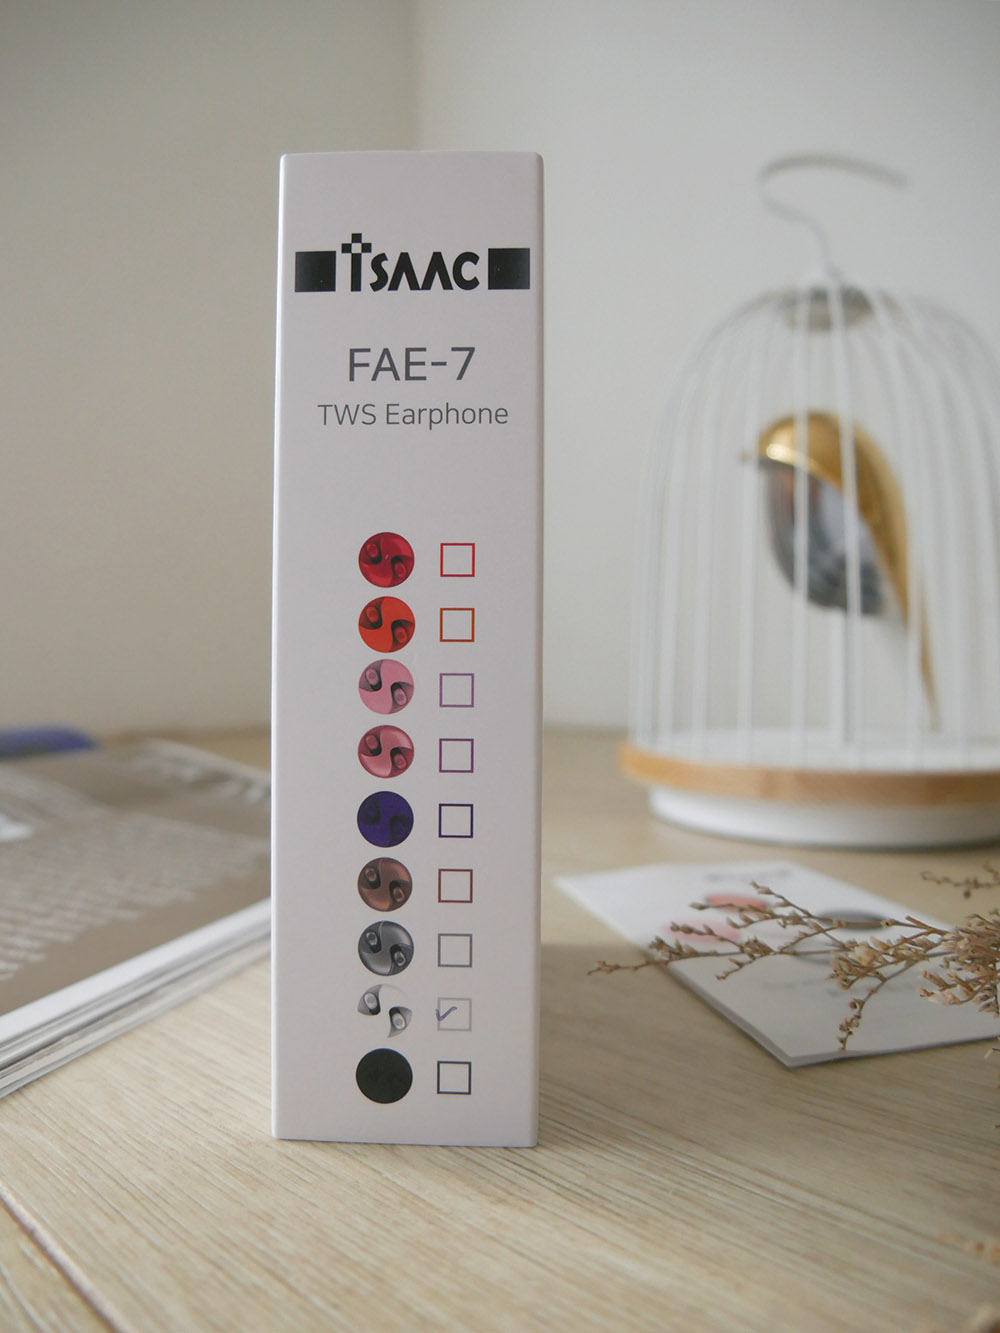 [啾團] 韓國ISAAC FAE-7粉餅真無線藍芽耳機!結合音質與質感讓耳機也是時尚配件